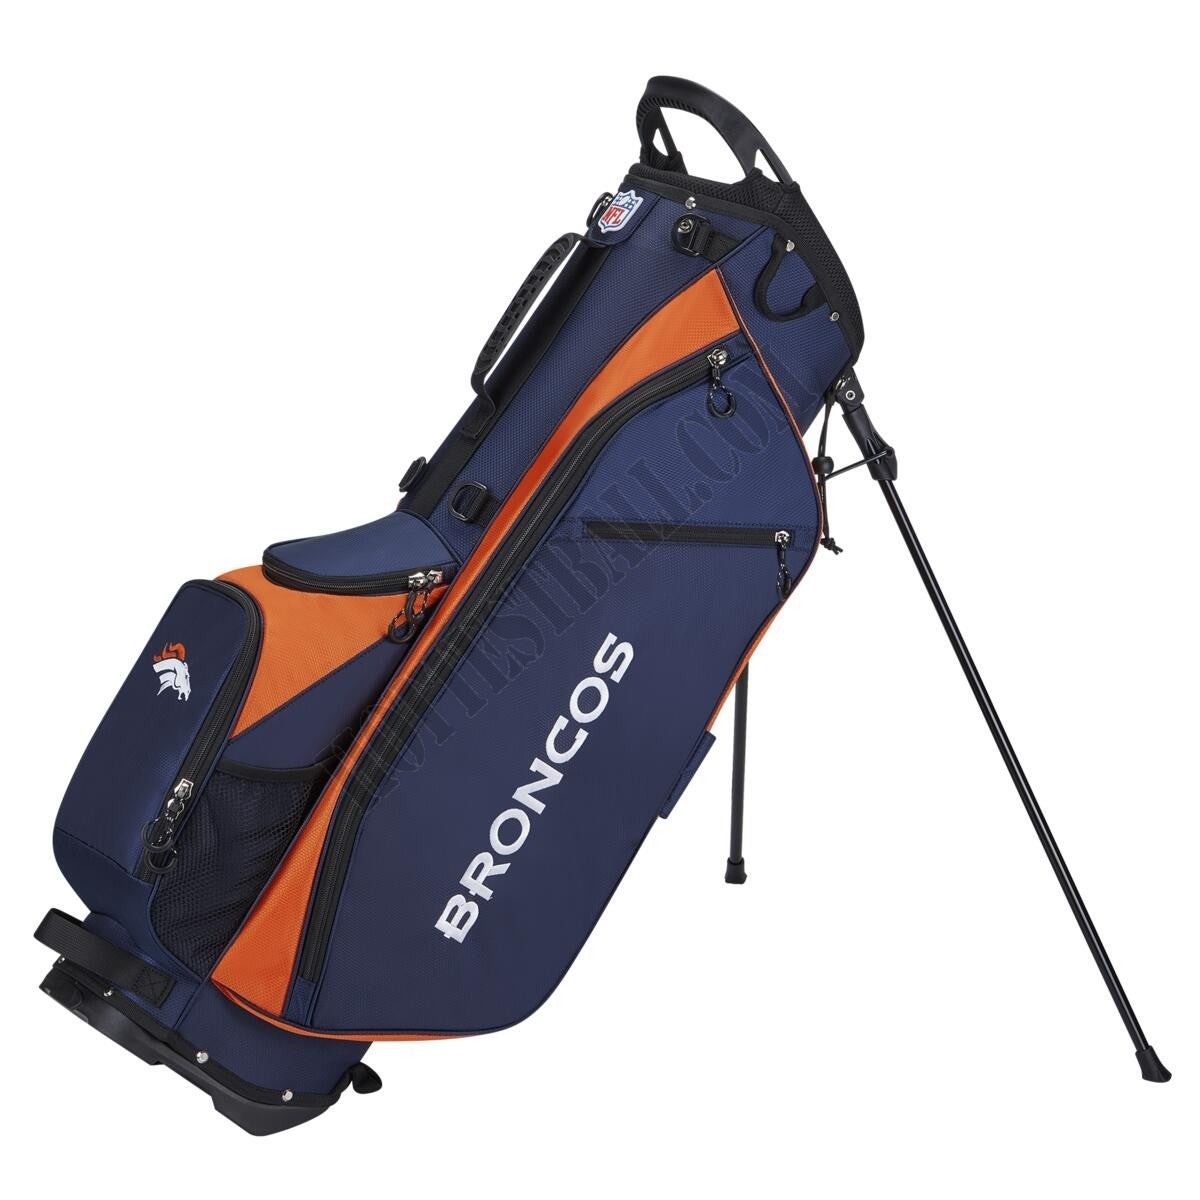 WIlson NFL Carry Golf Bag - Denver Broncos ● Wilson Promotions - WIlson NFL Carry Golf Bag - Denver Broncos ● Wilson Promotions